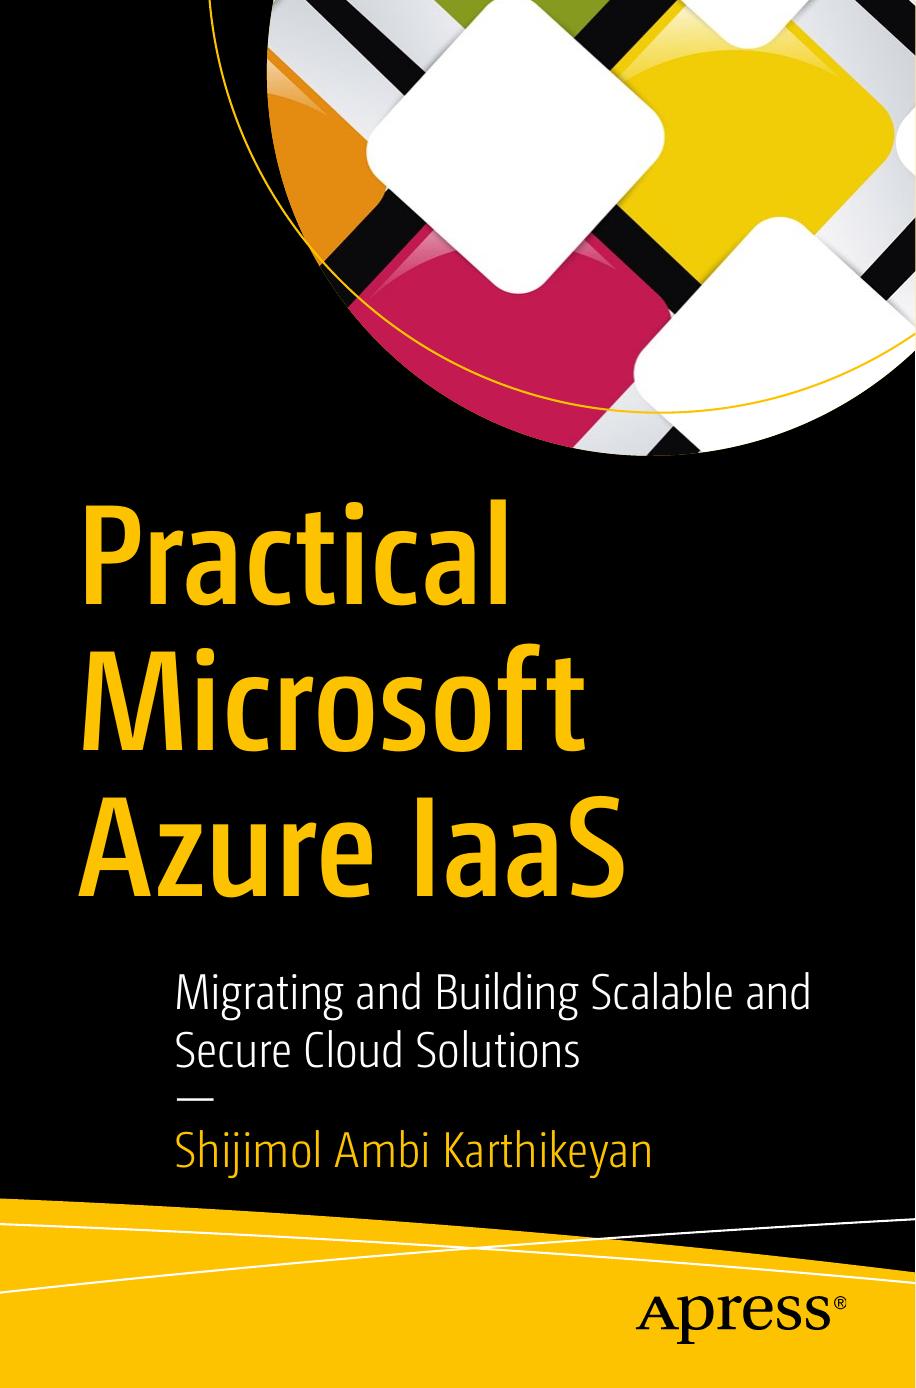 Practical Microsoft Azure IaaS by Shijimol Ambi Karthikeyan